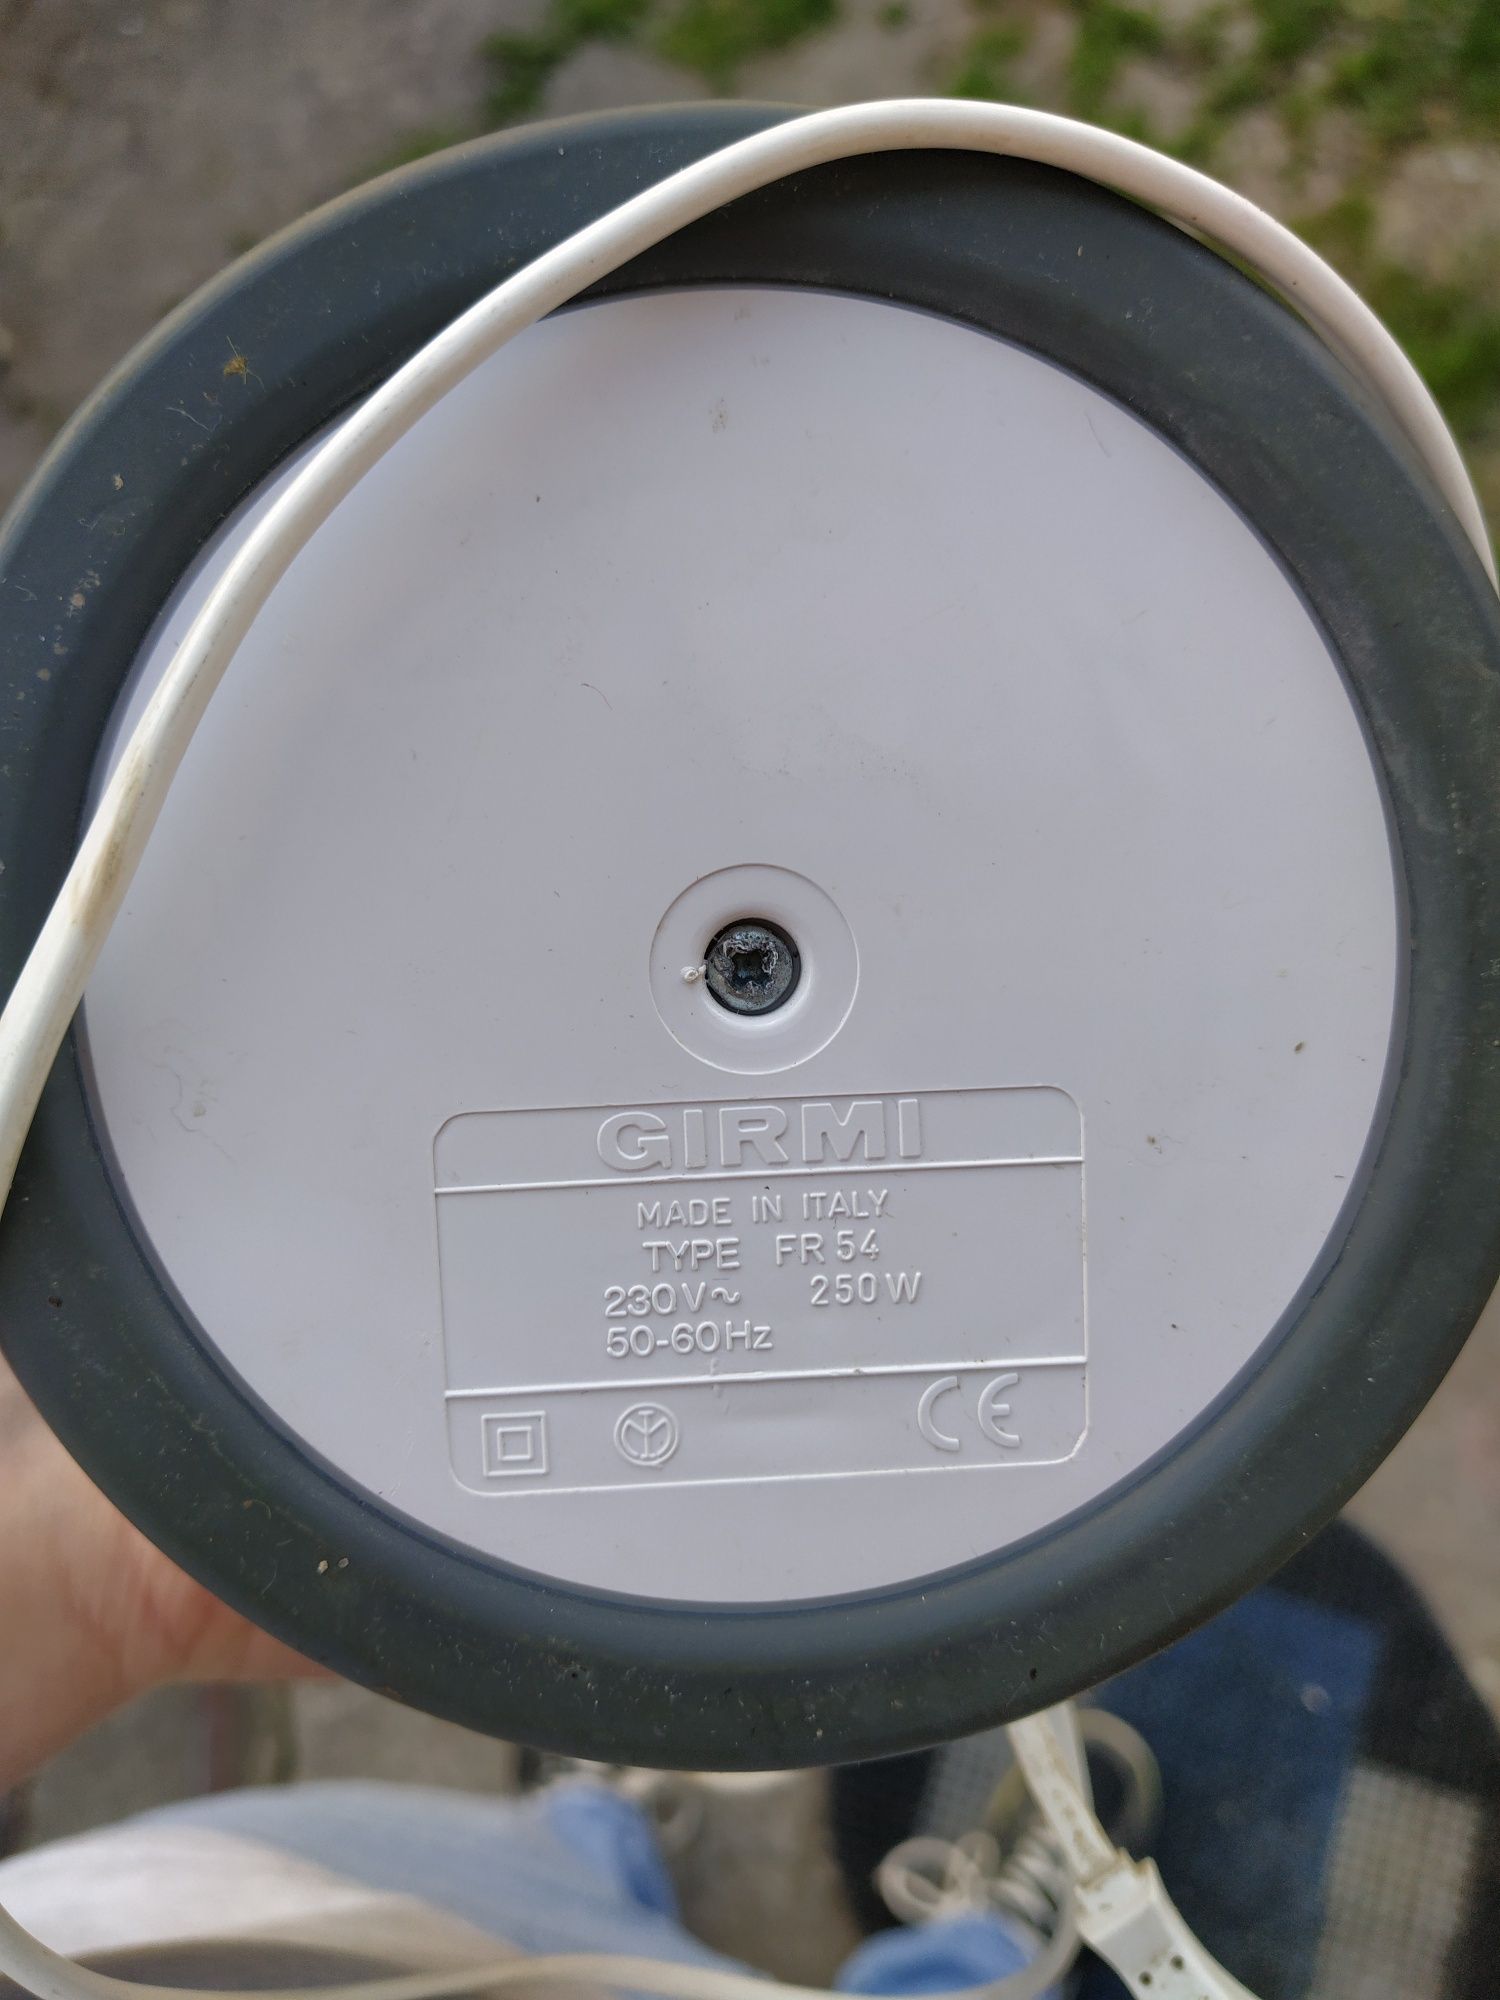 Блендер Girmi FR54 made in Italy